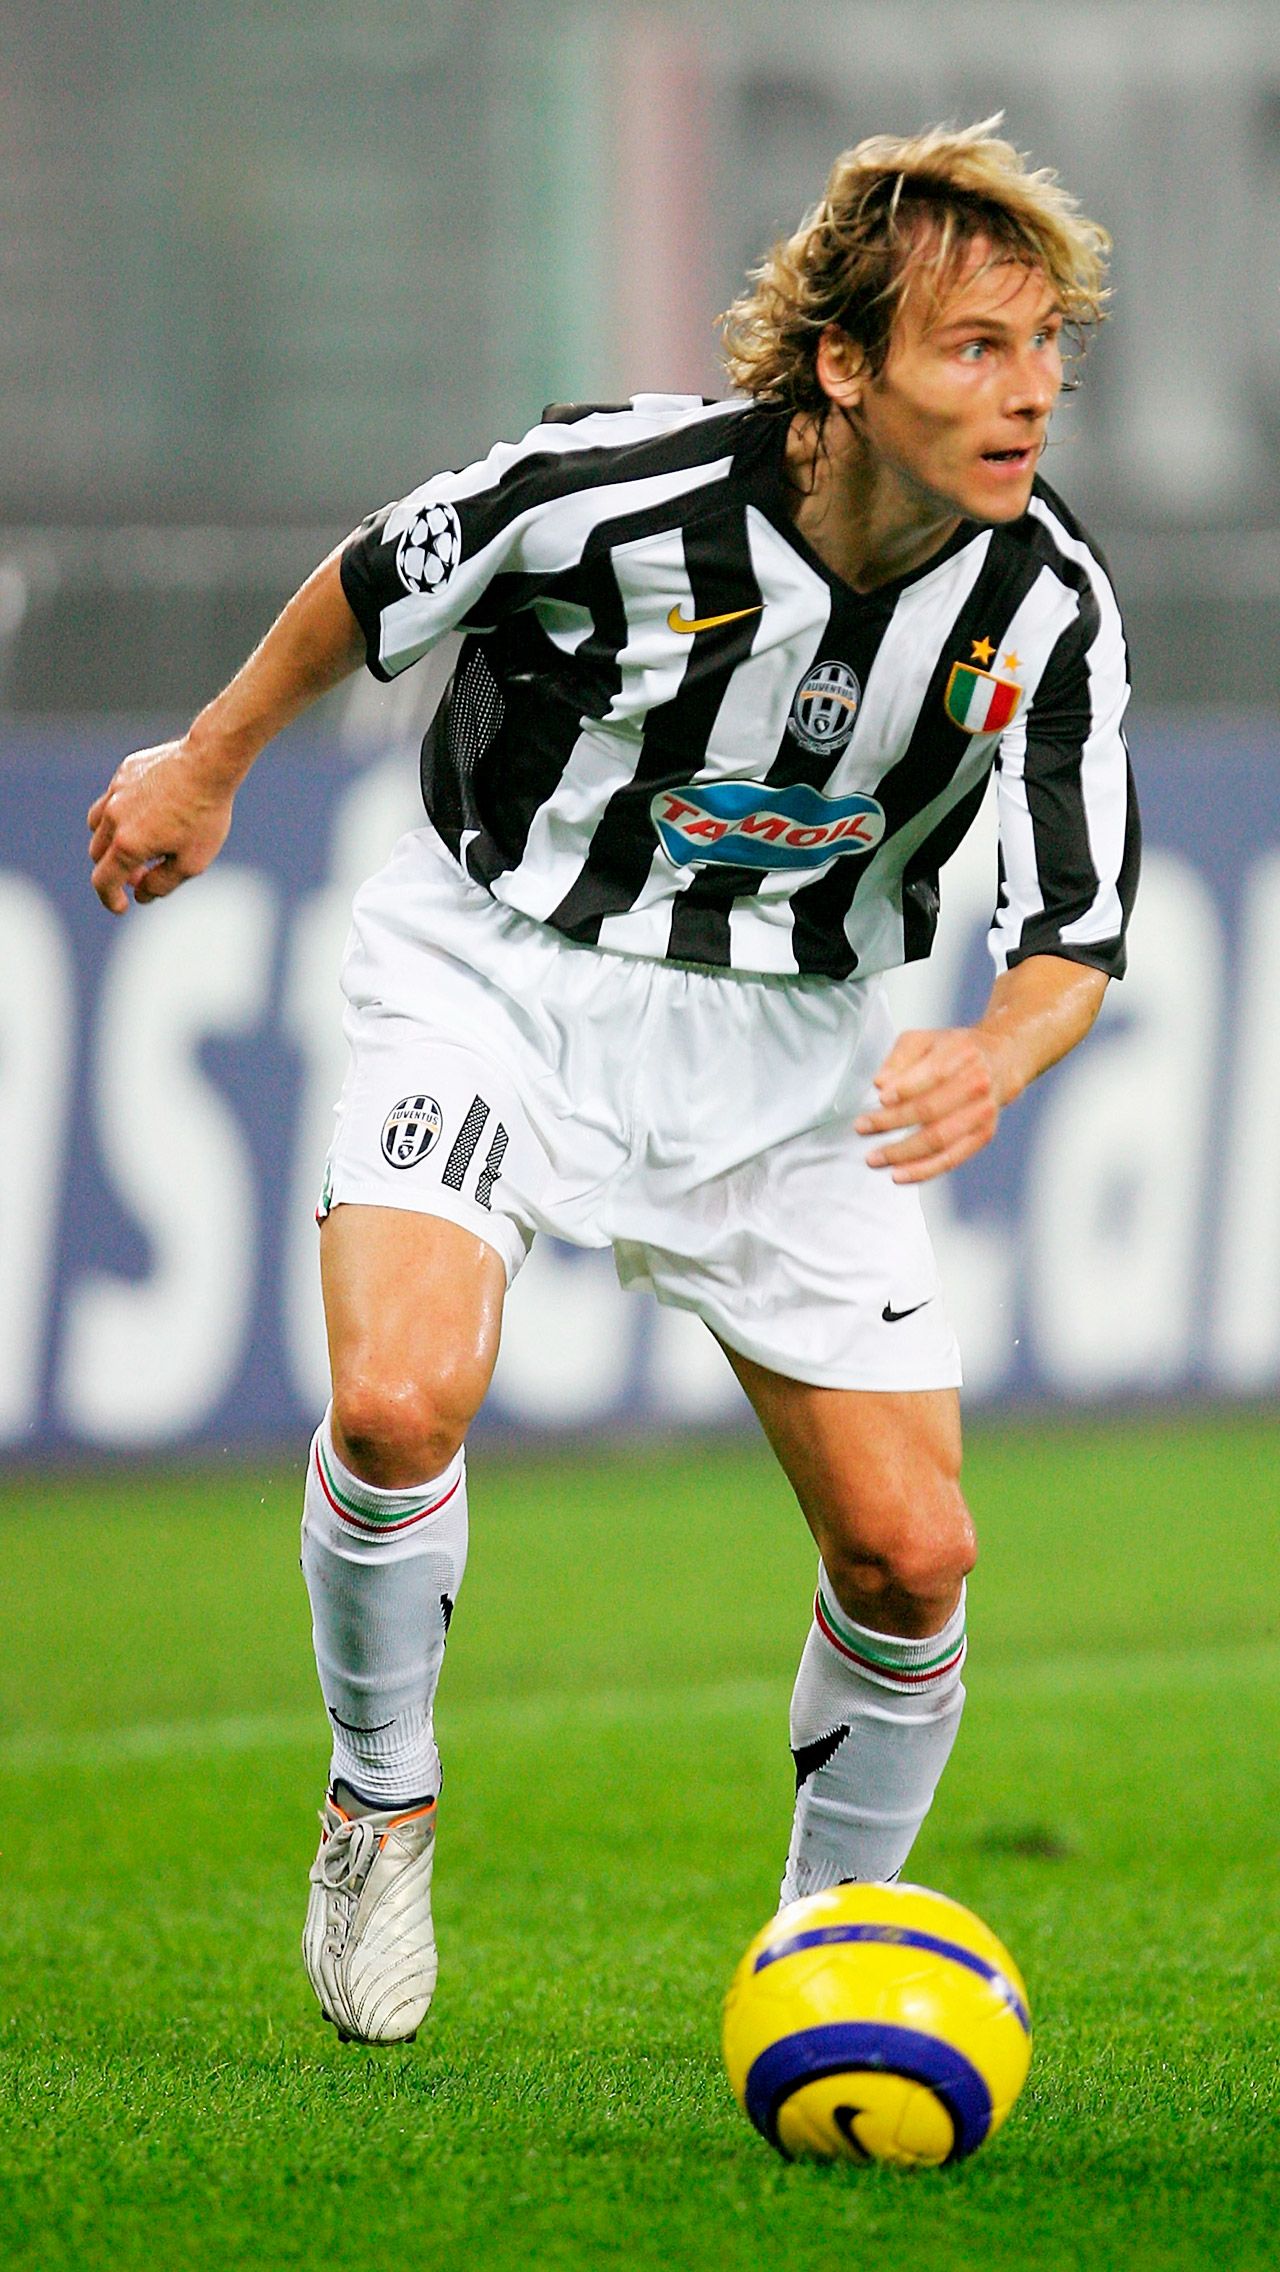 Павел Недвед считается одним из сильнейших полузащитников своего времени, был удостоен «Золотого мяча» 2003 года как лучший игрок сезона в мире.